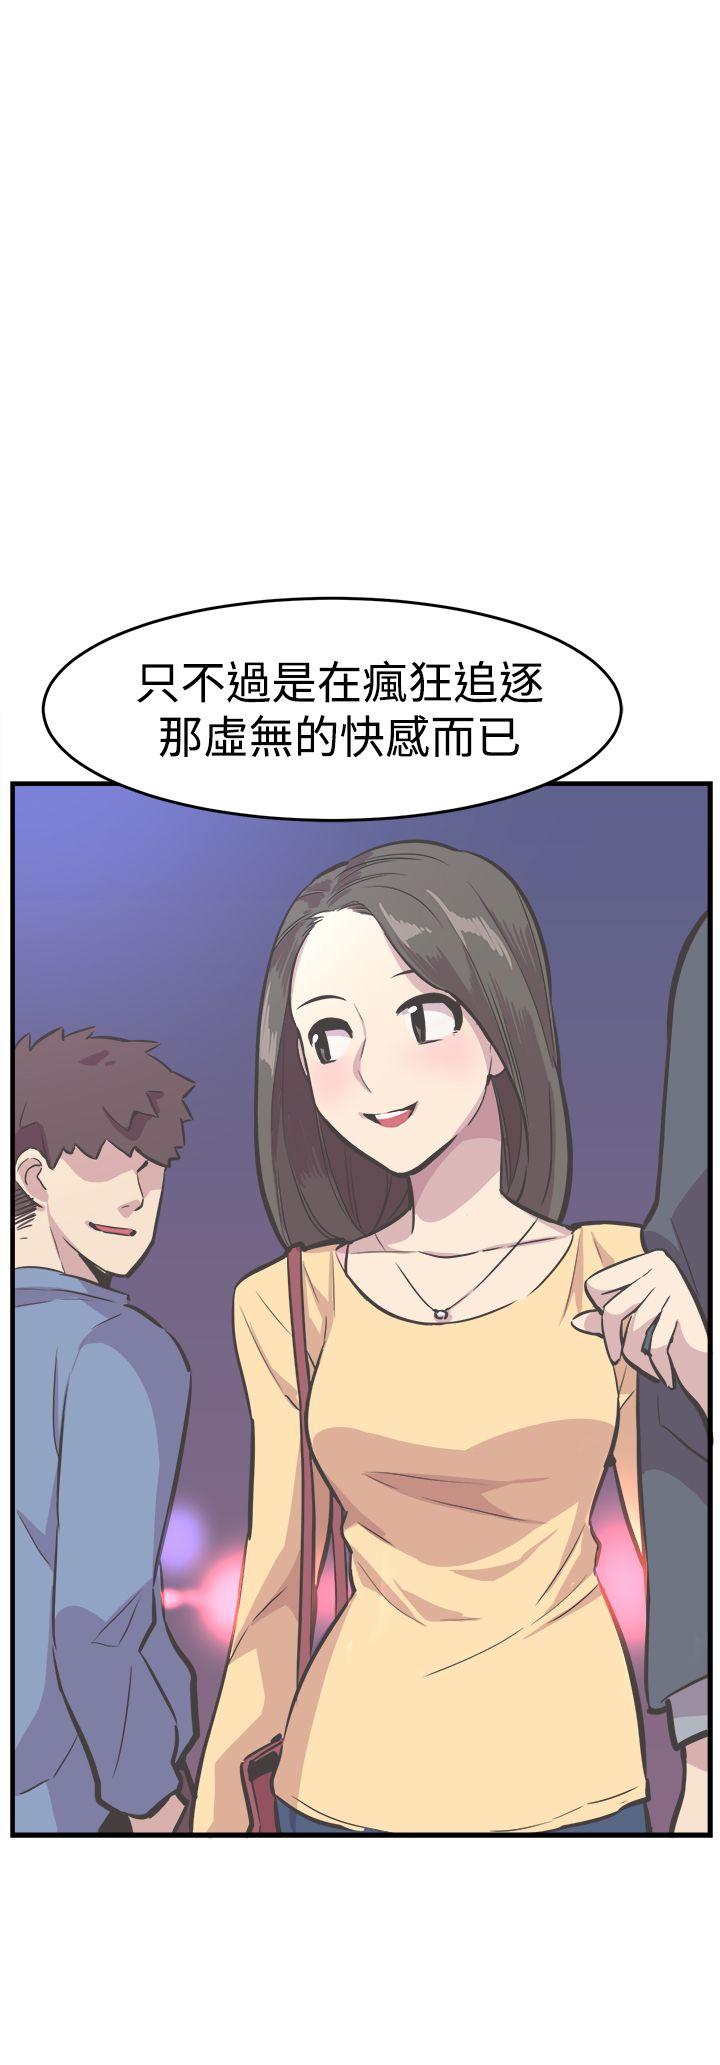 韩国污漫画 青春男女(完結) 最终话 15